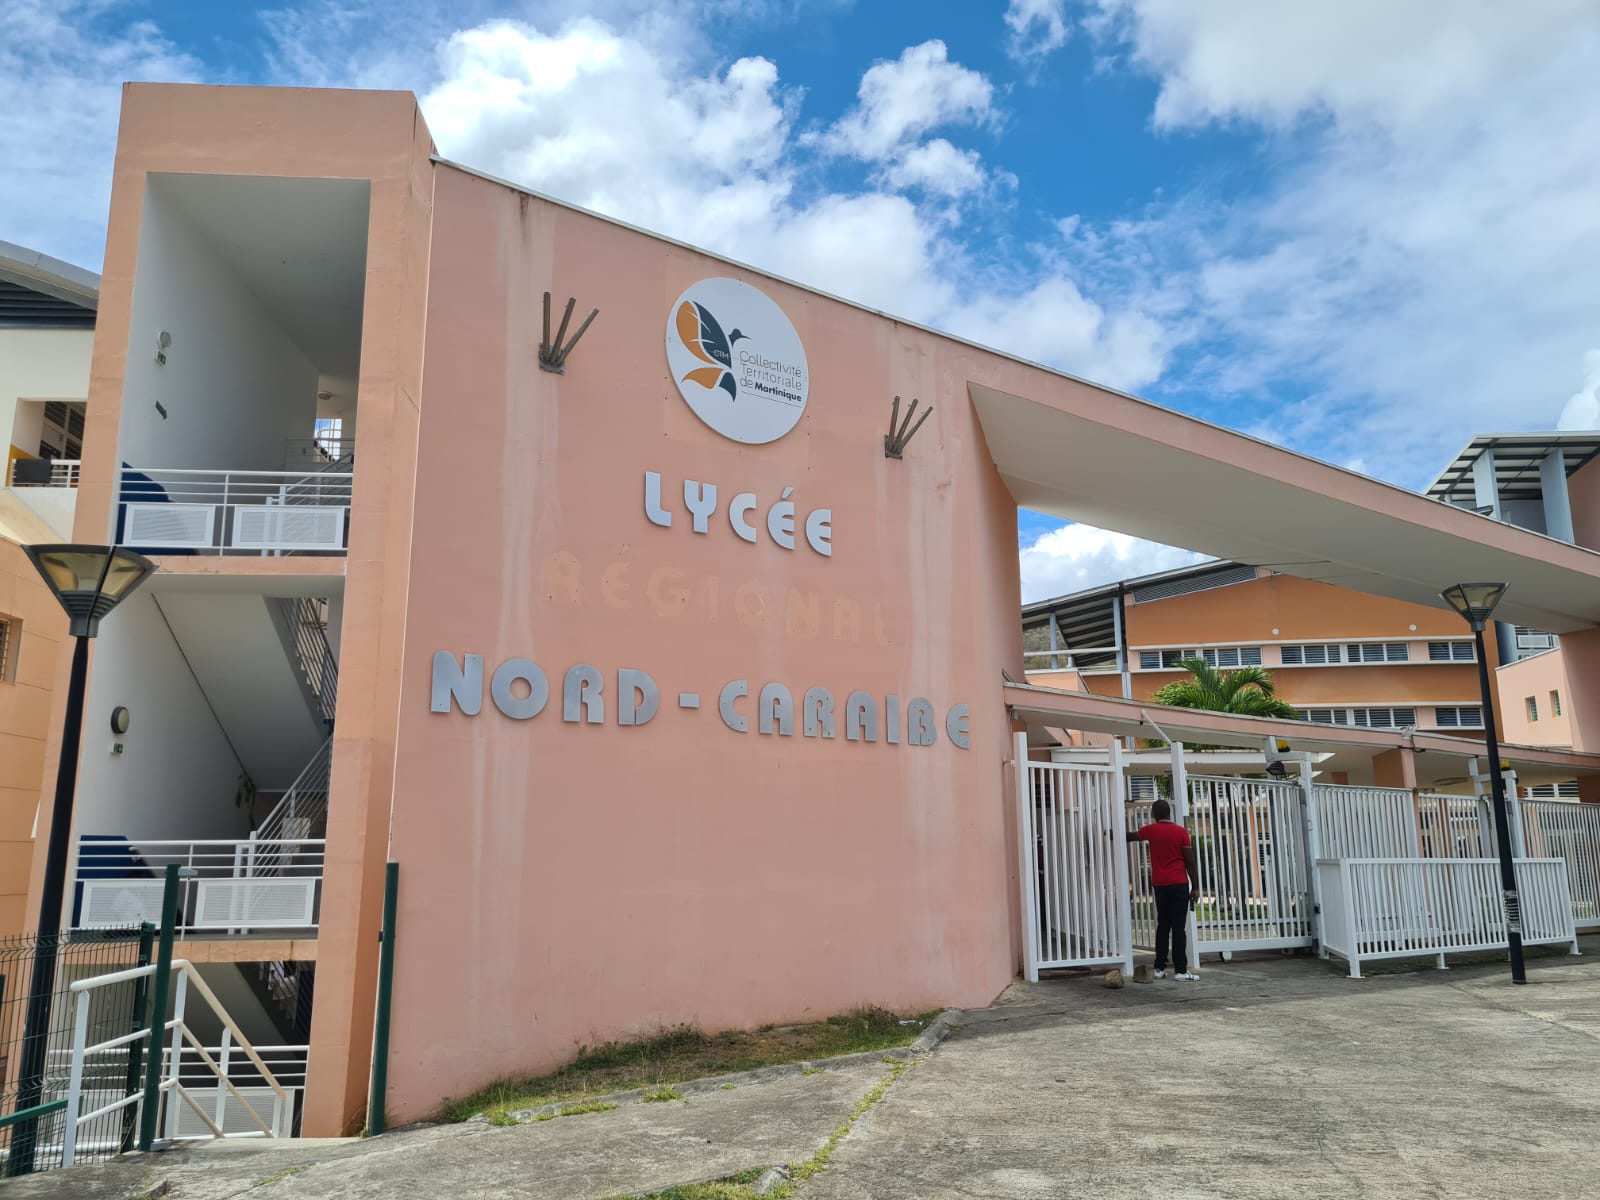     Bellefontaine : accord trouvé au lycée Nord-Caraïbe, reprise des cours en présentiel jeudi

